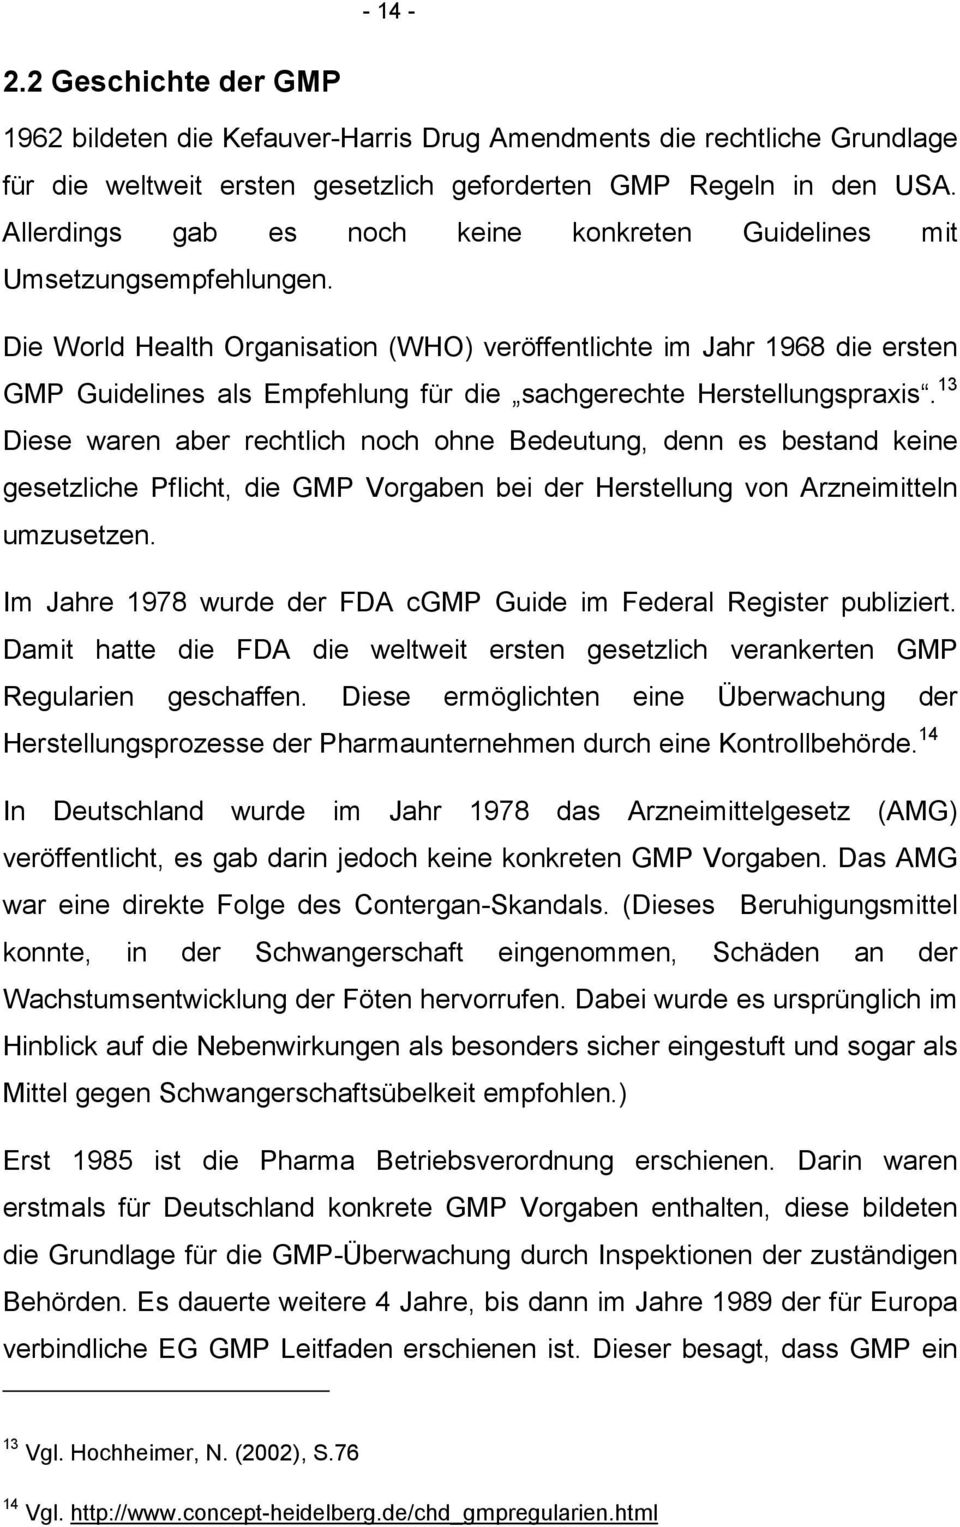 Die World Health Organisation (WHO) veröffentlichte im Jahr 1968 die ersten GMP Guidelines als Empfehlung für die sachgerechte Herstellungspraxis.